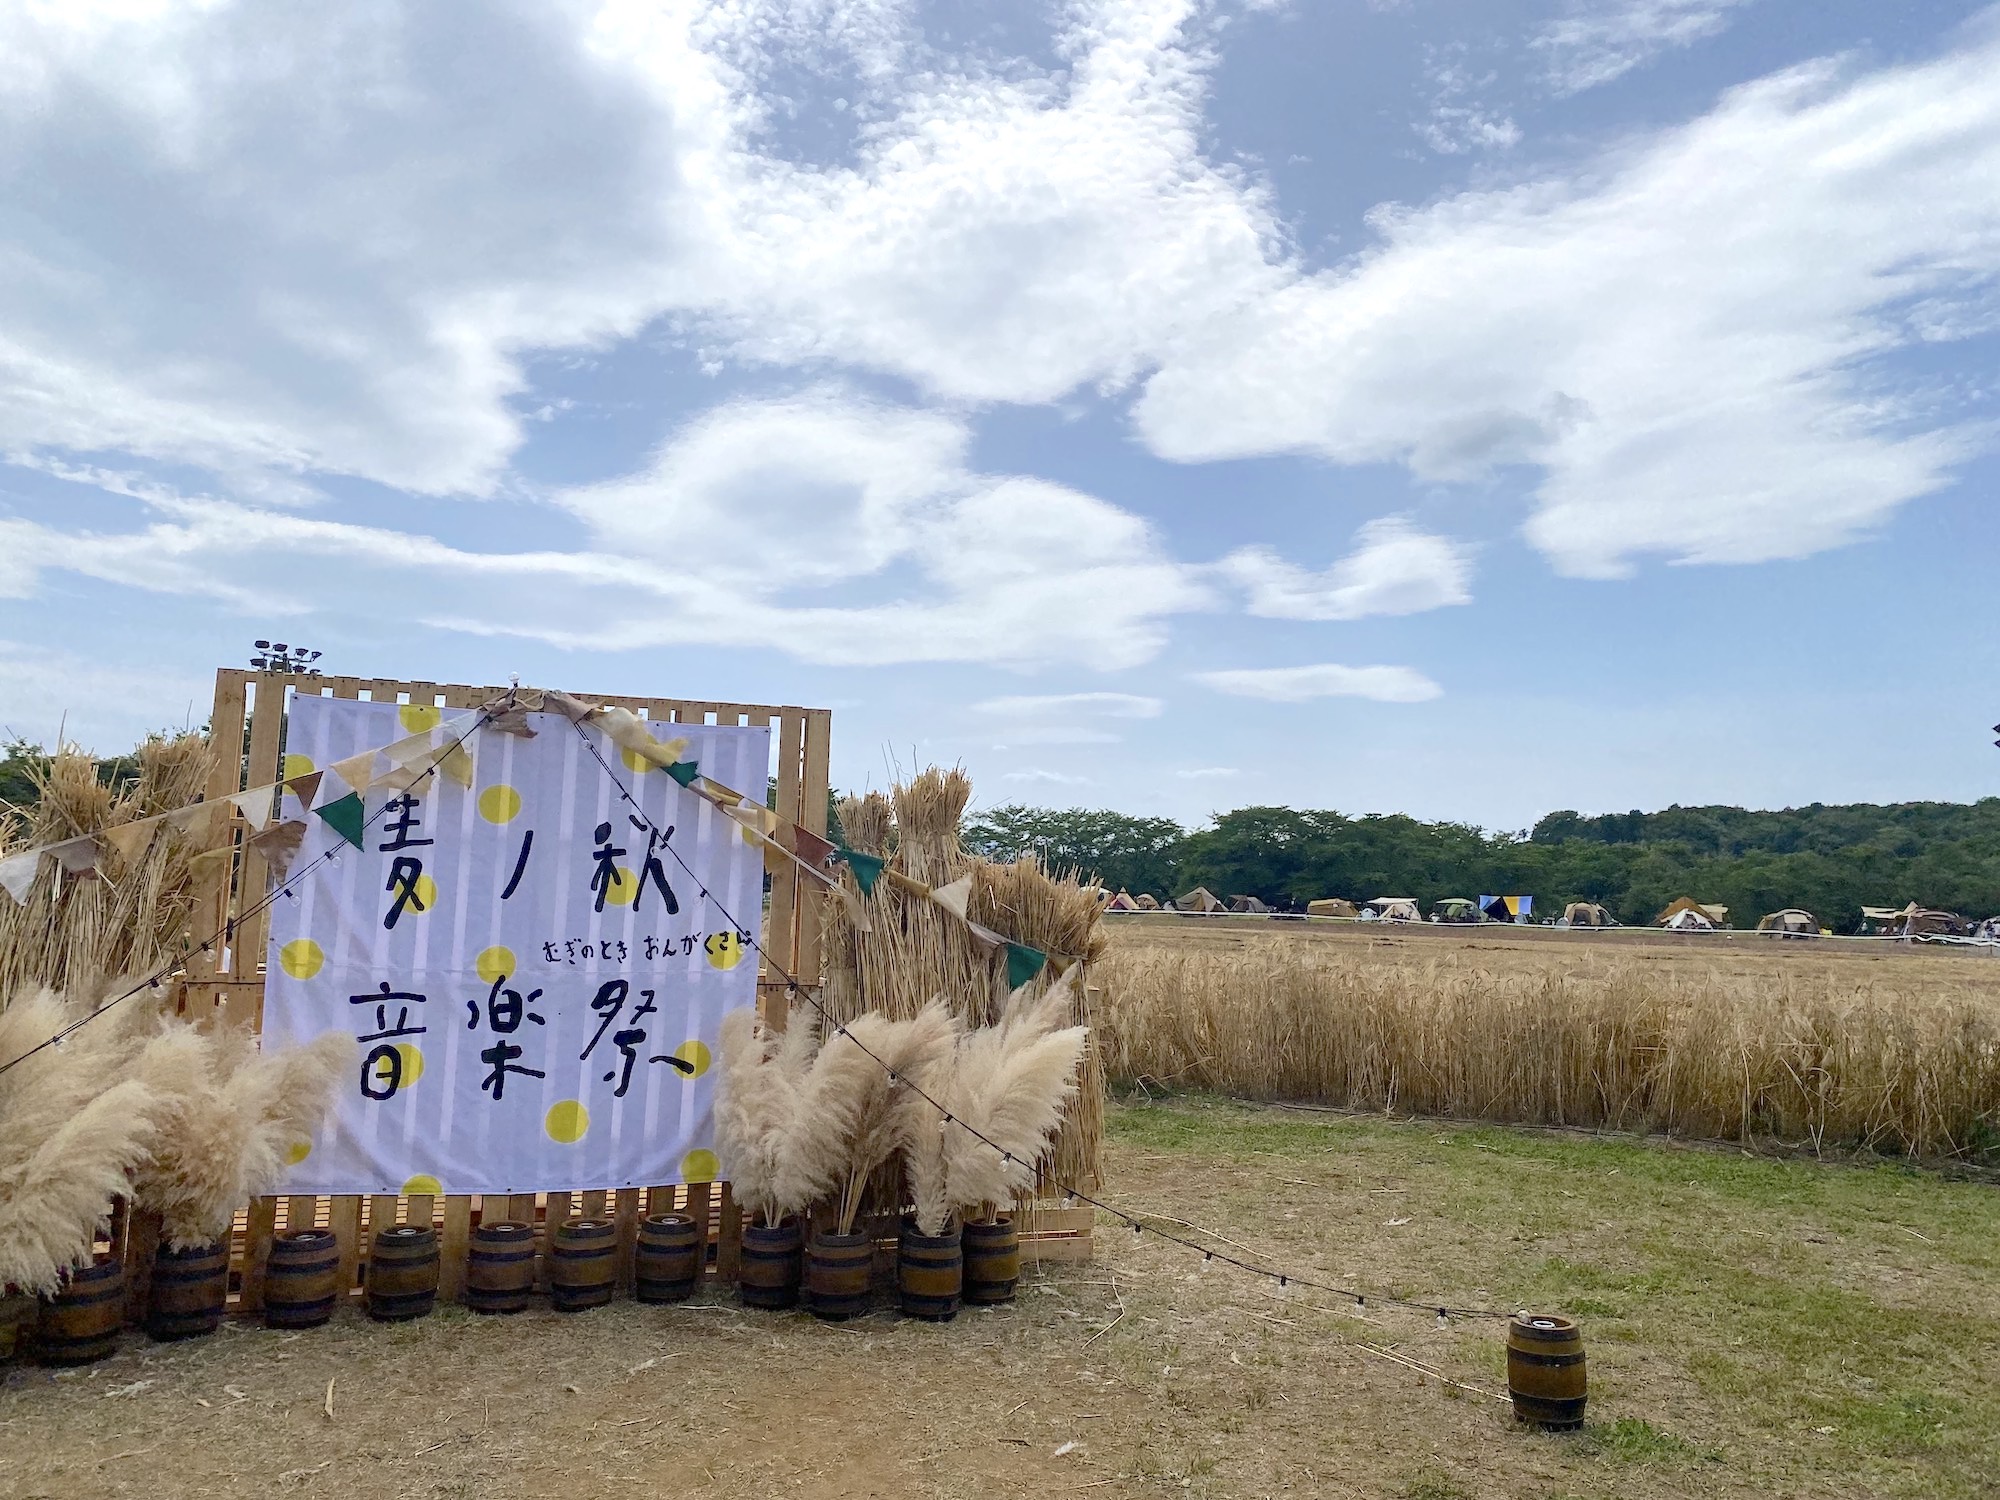 東松山のCOEDO醸造所で春と秋に開催されるキャンプインフェス「麦ノ秋（むぎのとき）」。限定醸造されたクラフトビールを野外でゴクッ